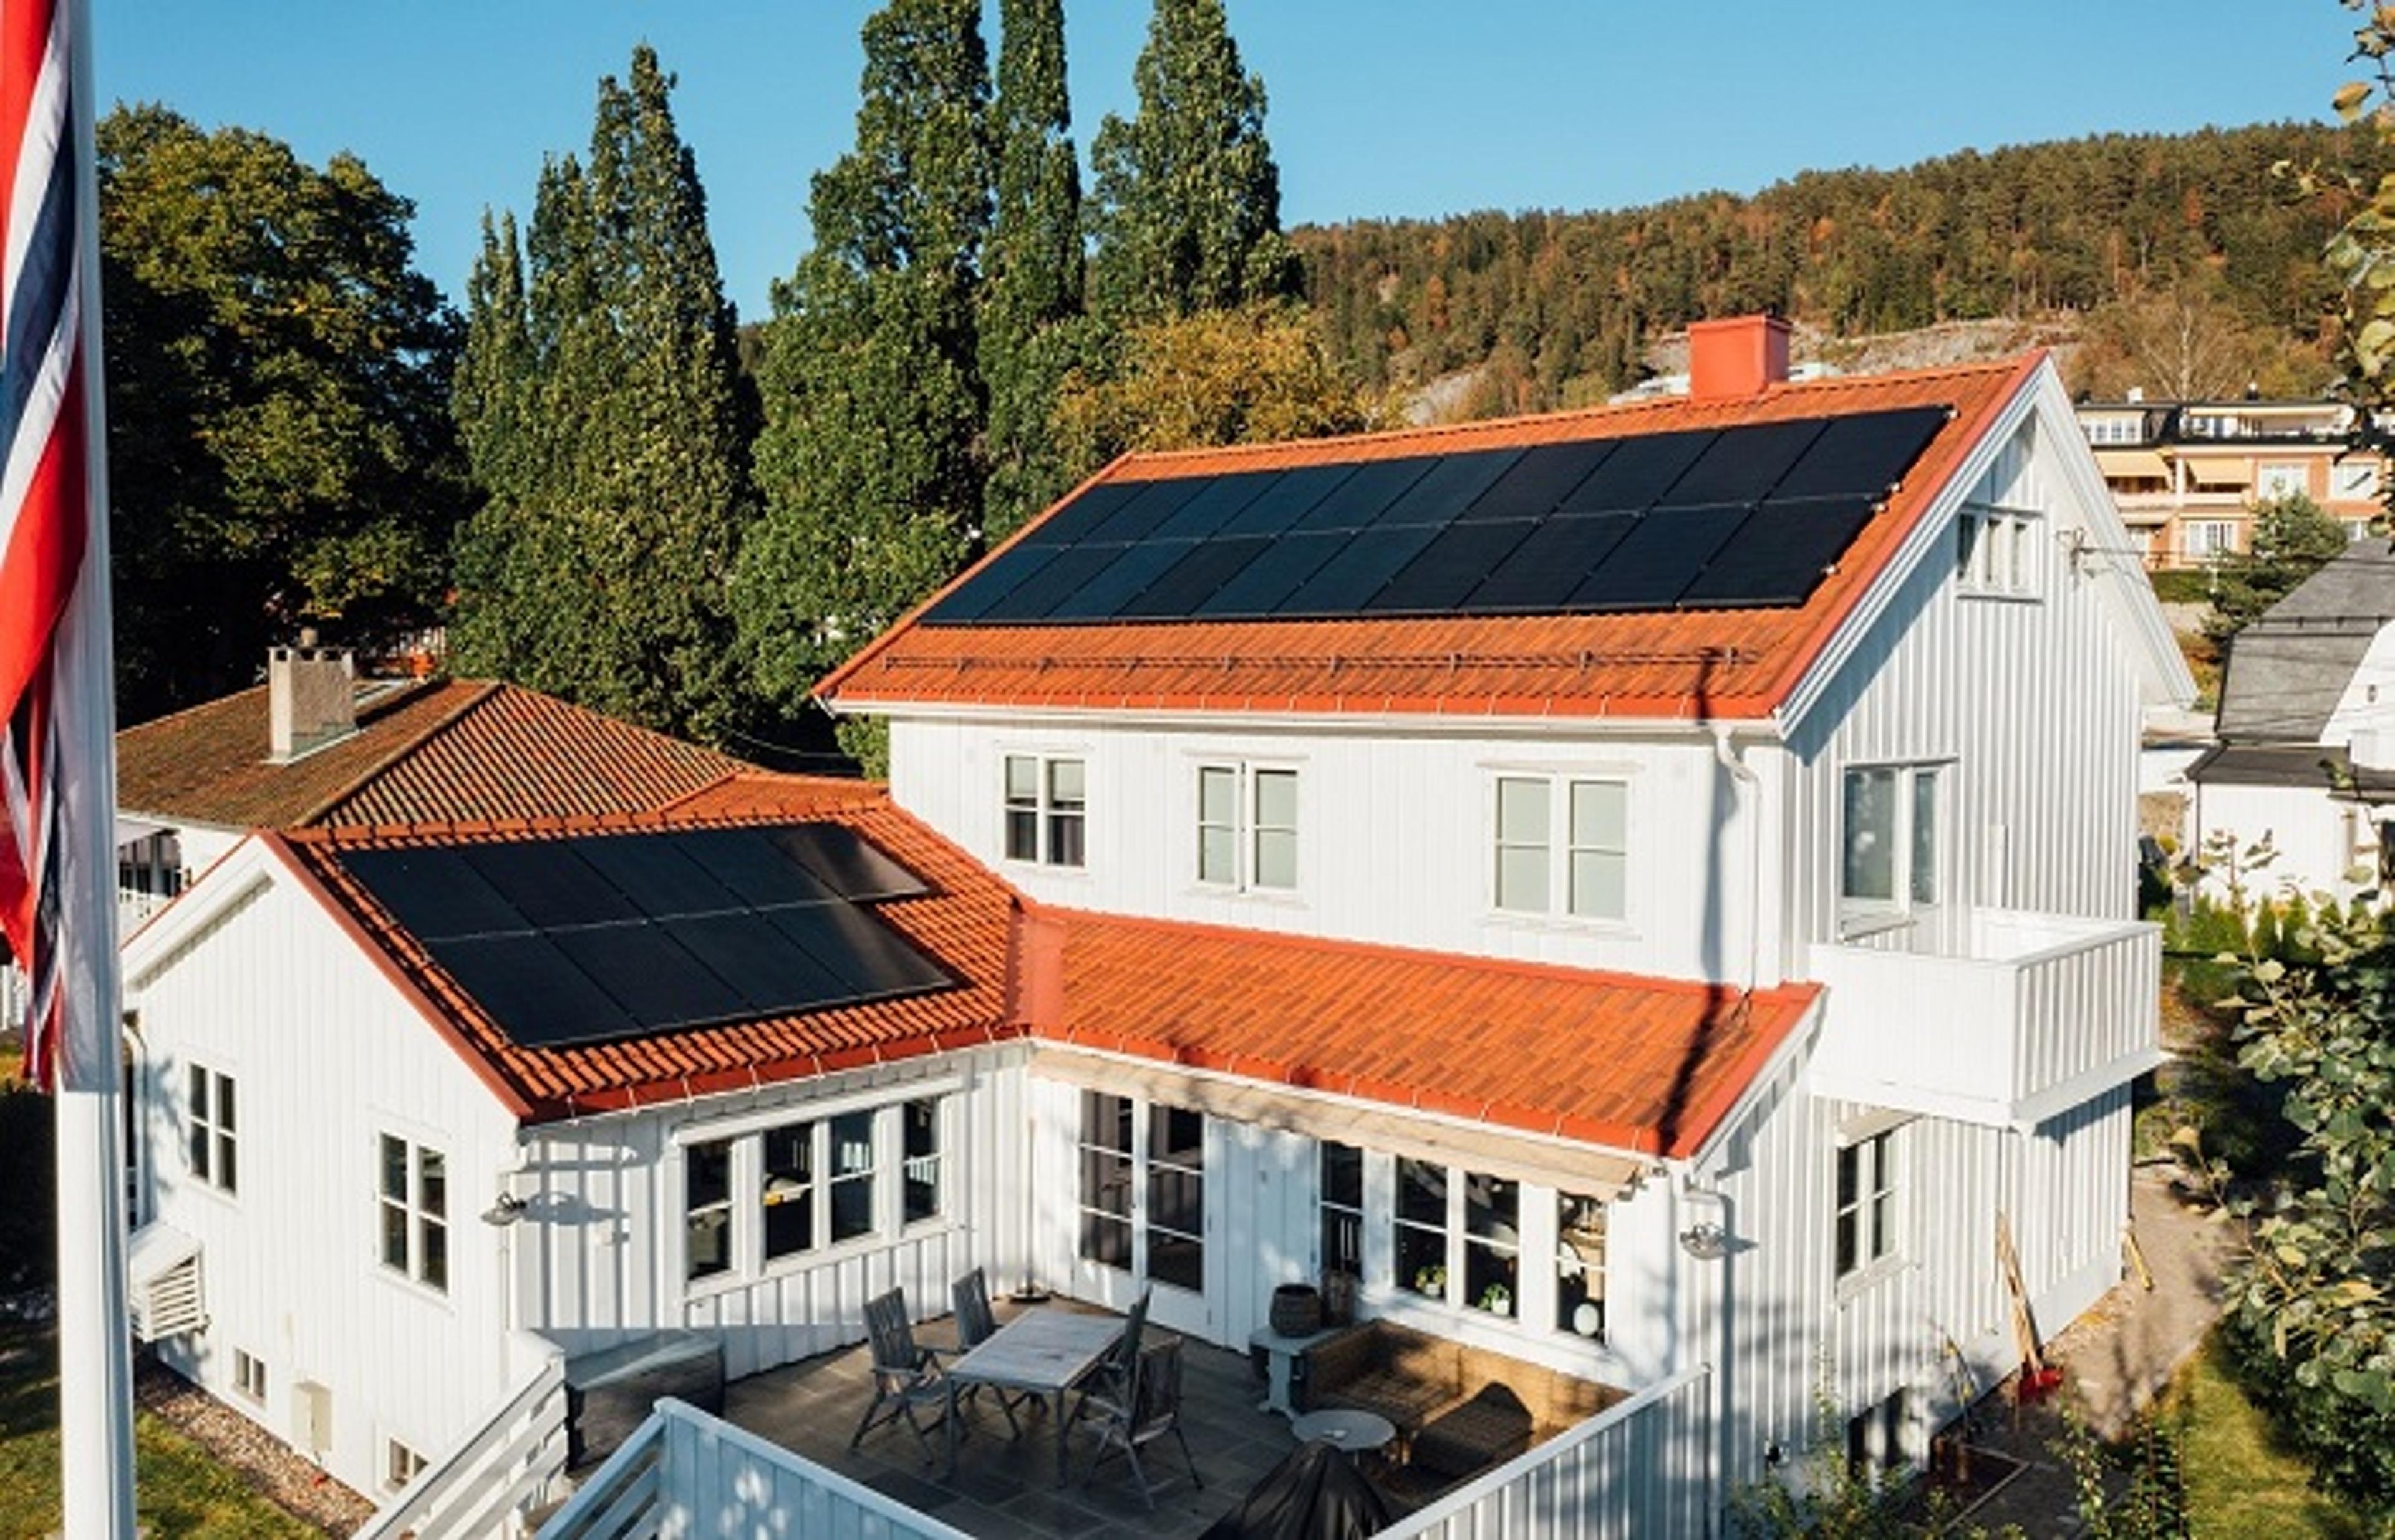  29 solcellepaneler på taket - fra 2021